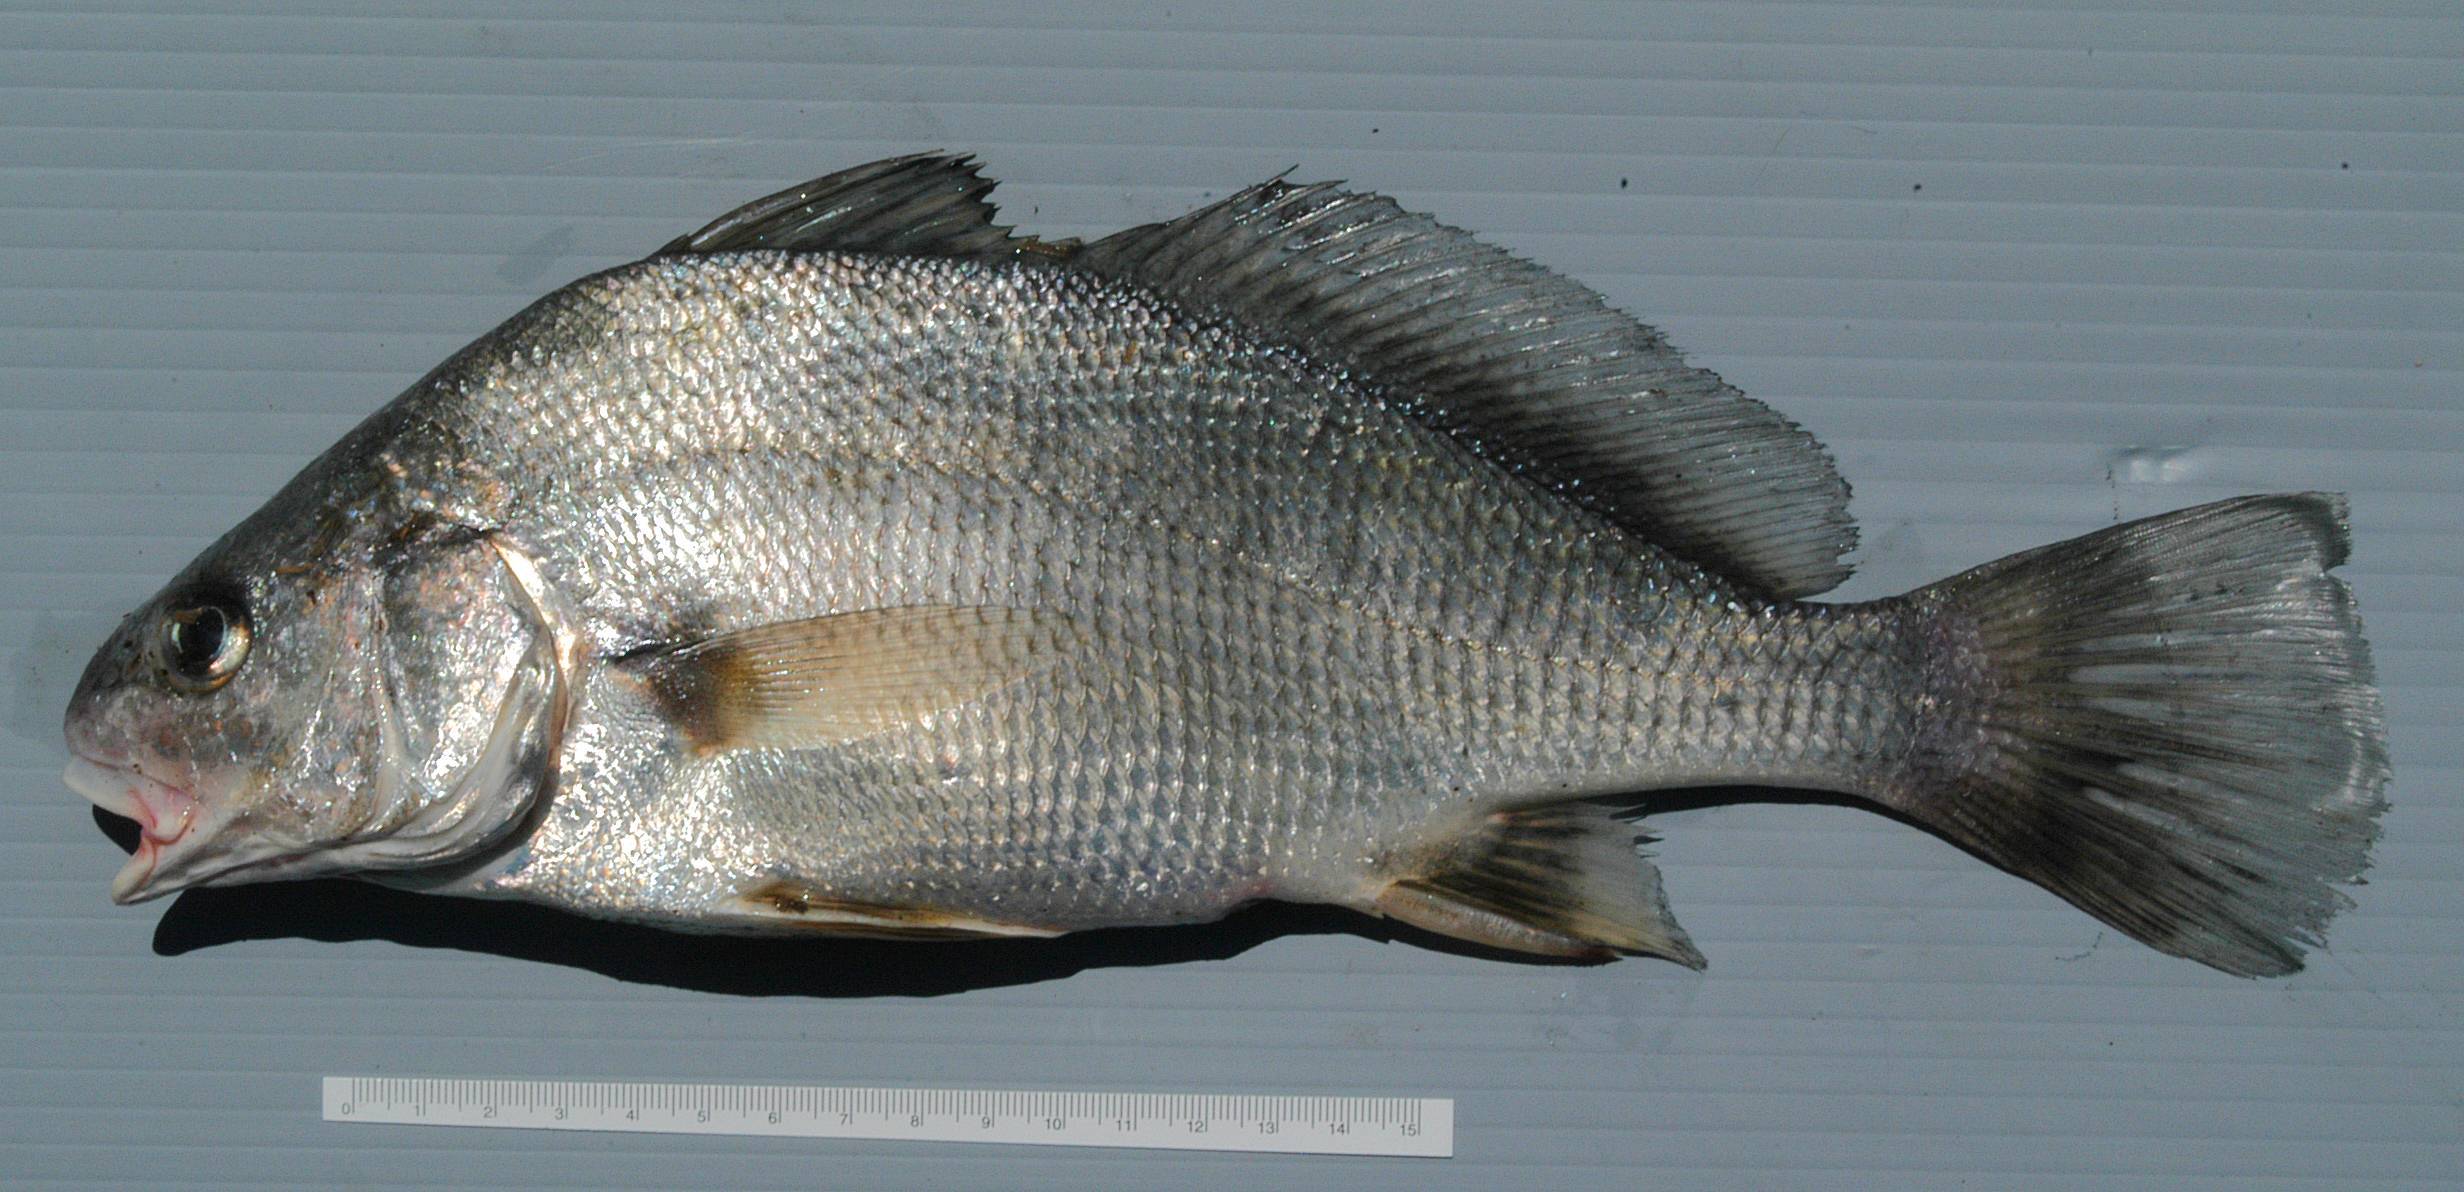 Голец усатый фото и описание – каталог рыб, смотреть онлайн